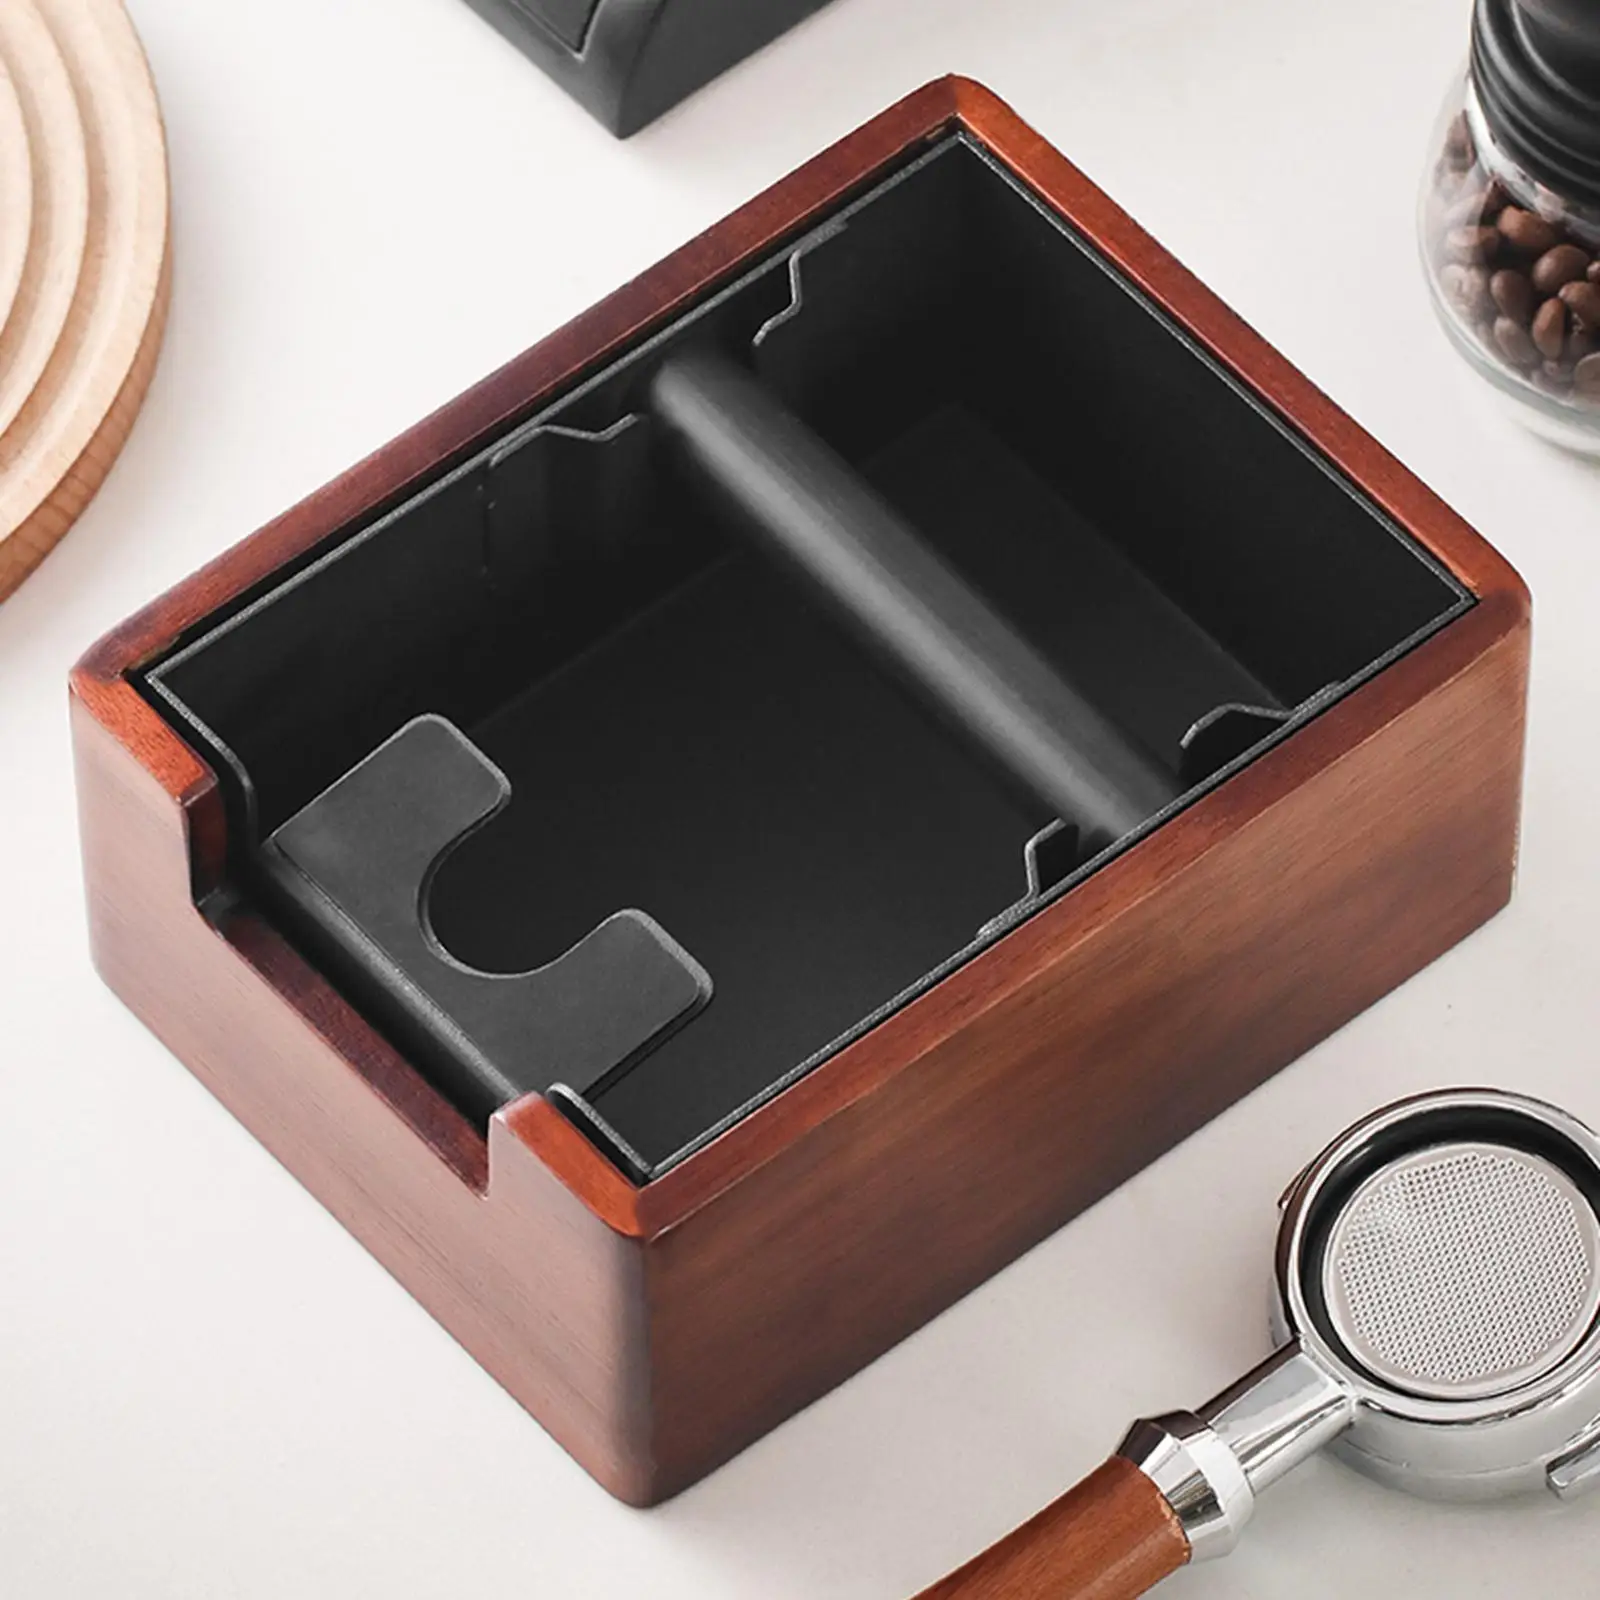 Wooden Coffee Residue Box Non Slip Base Residue Basket 1.5L Espresso Dump Bin for Espresso Machine Accessories Home